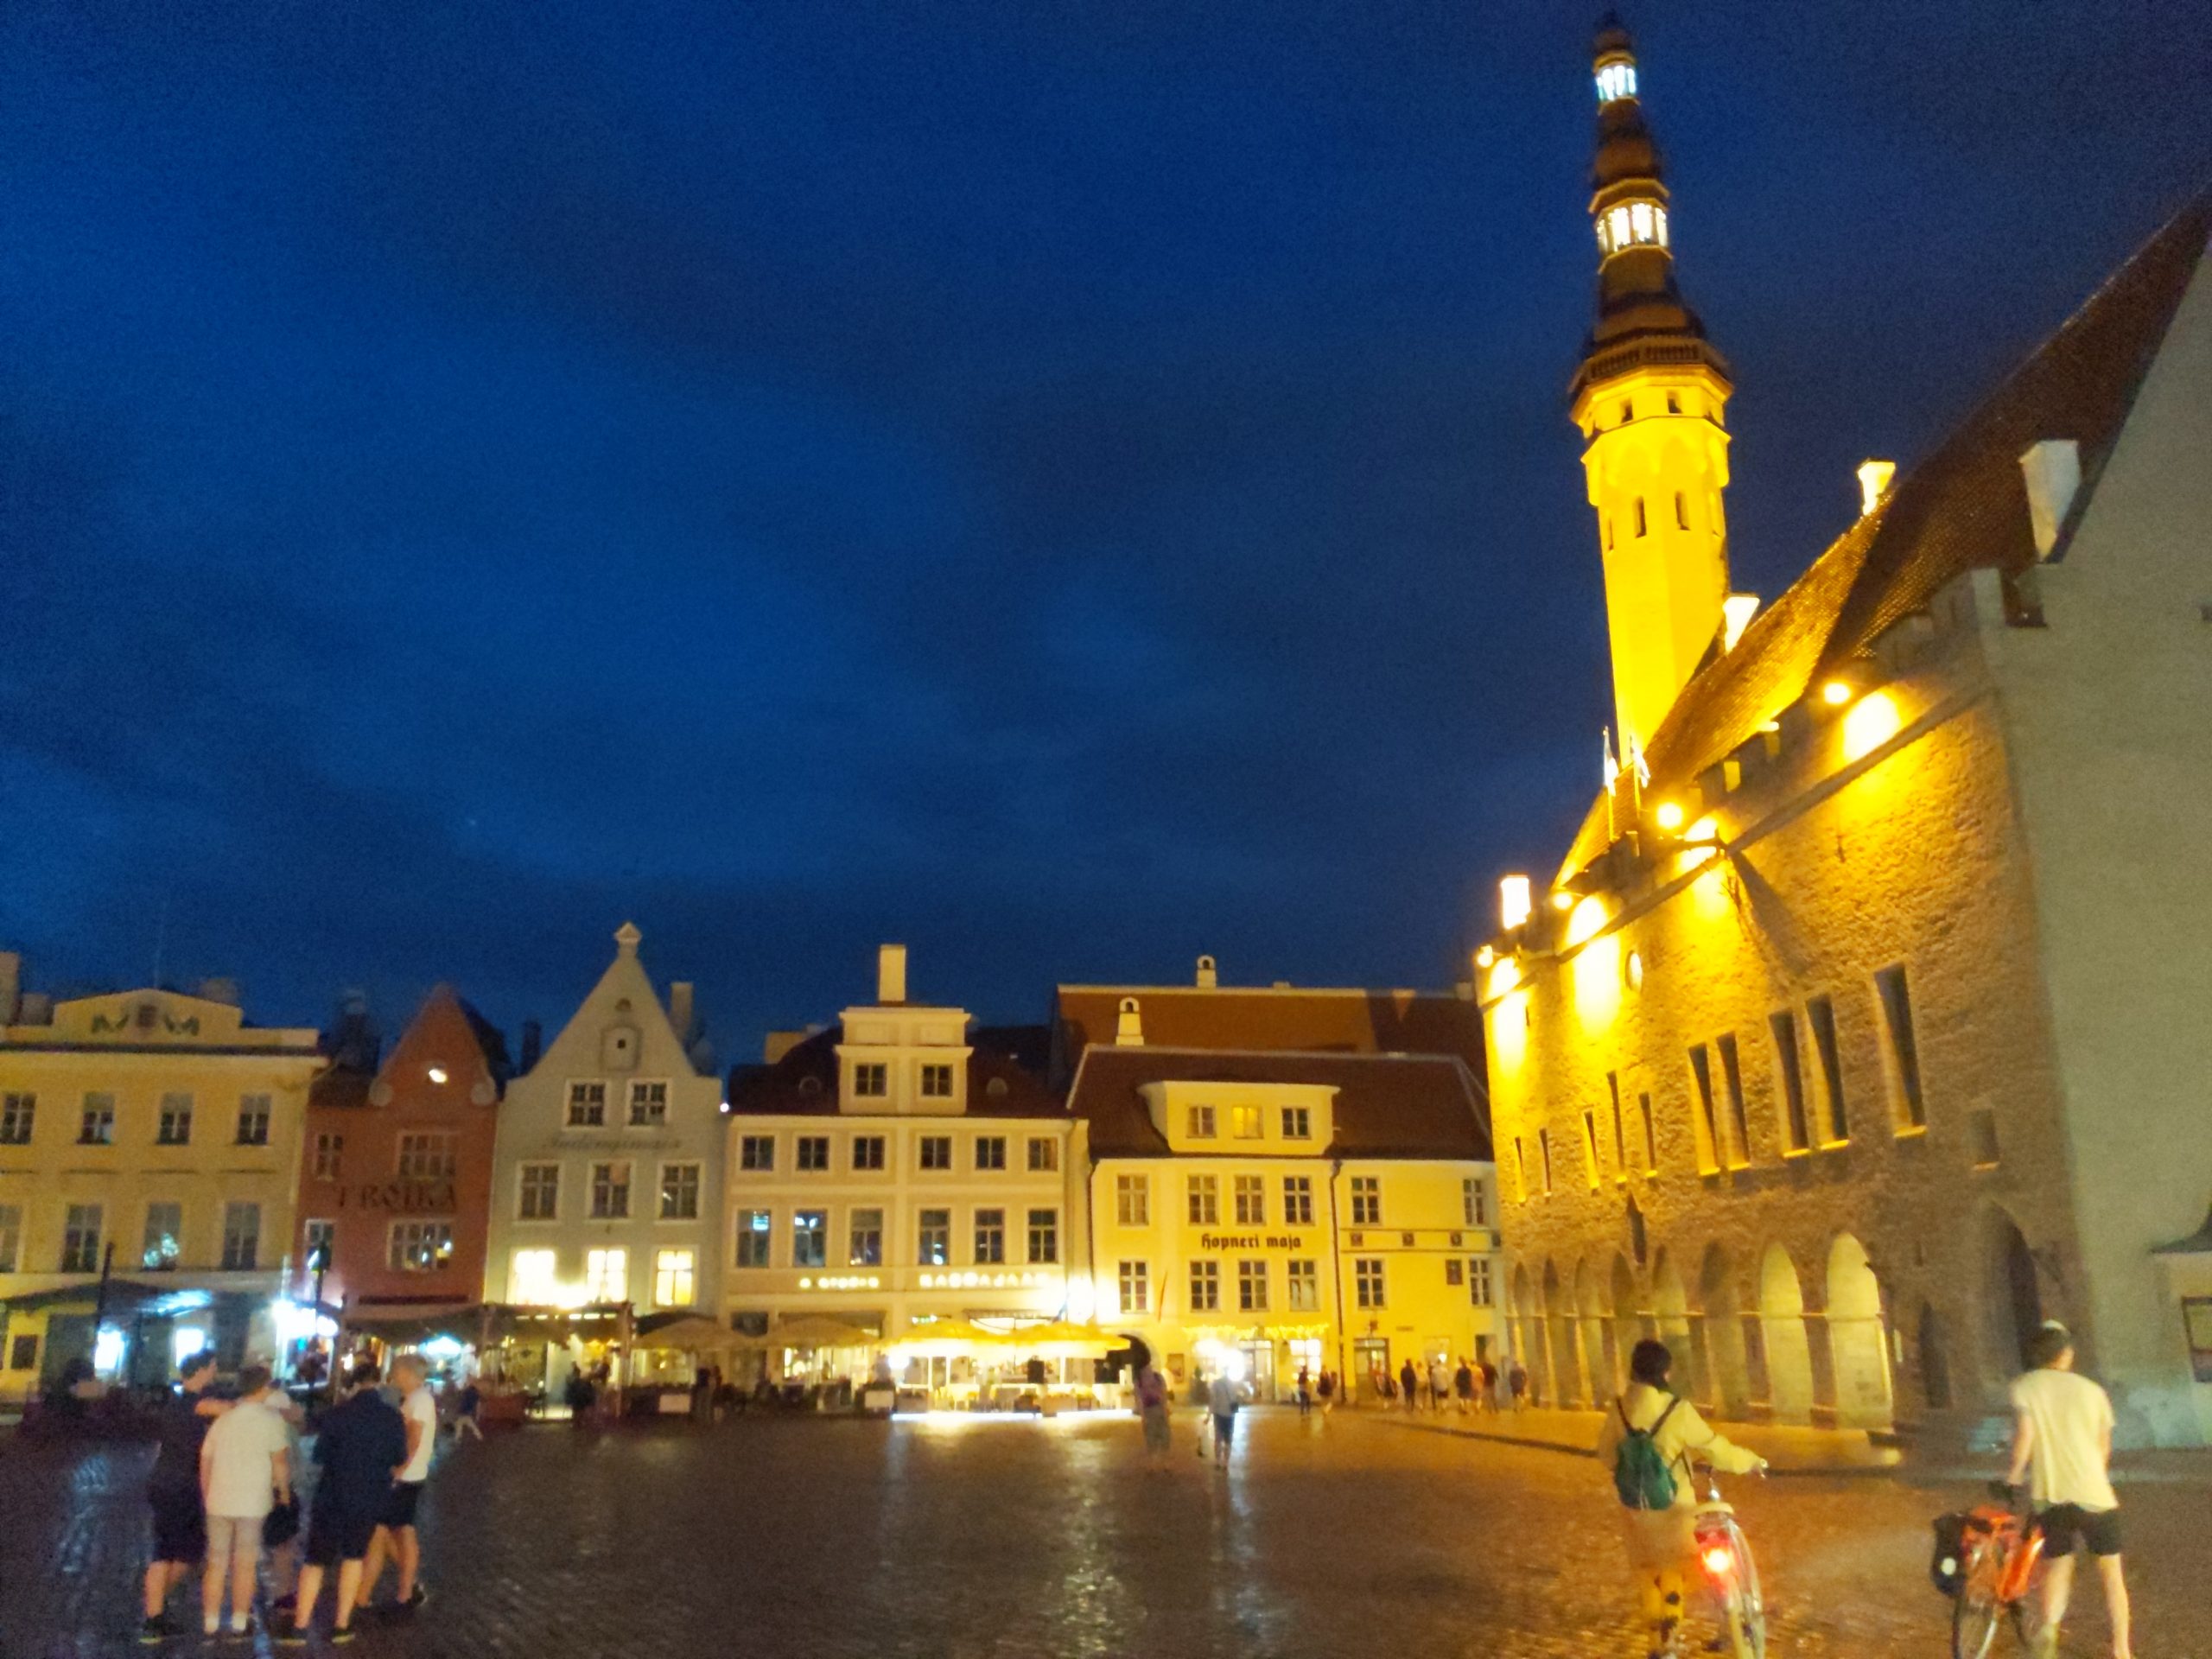 Tallinn Town-Hall Square at night.